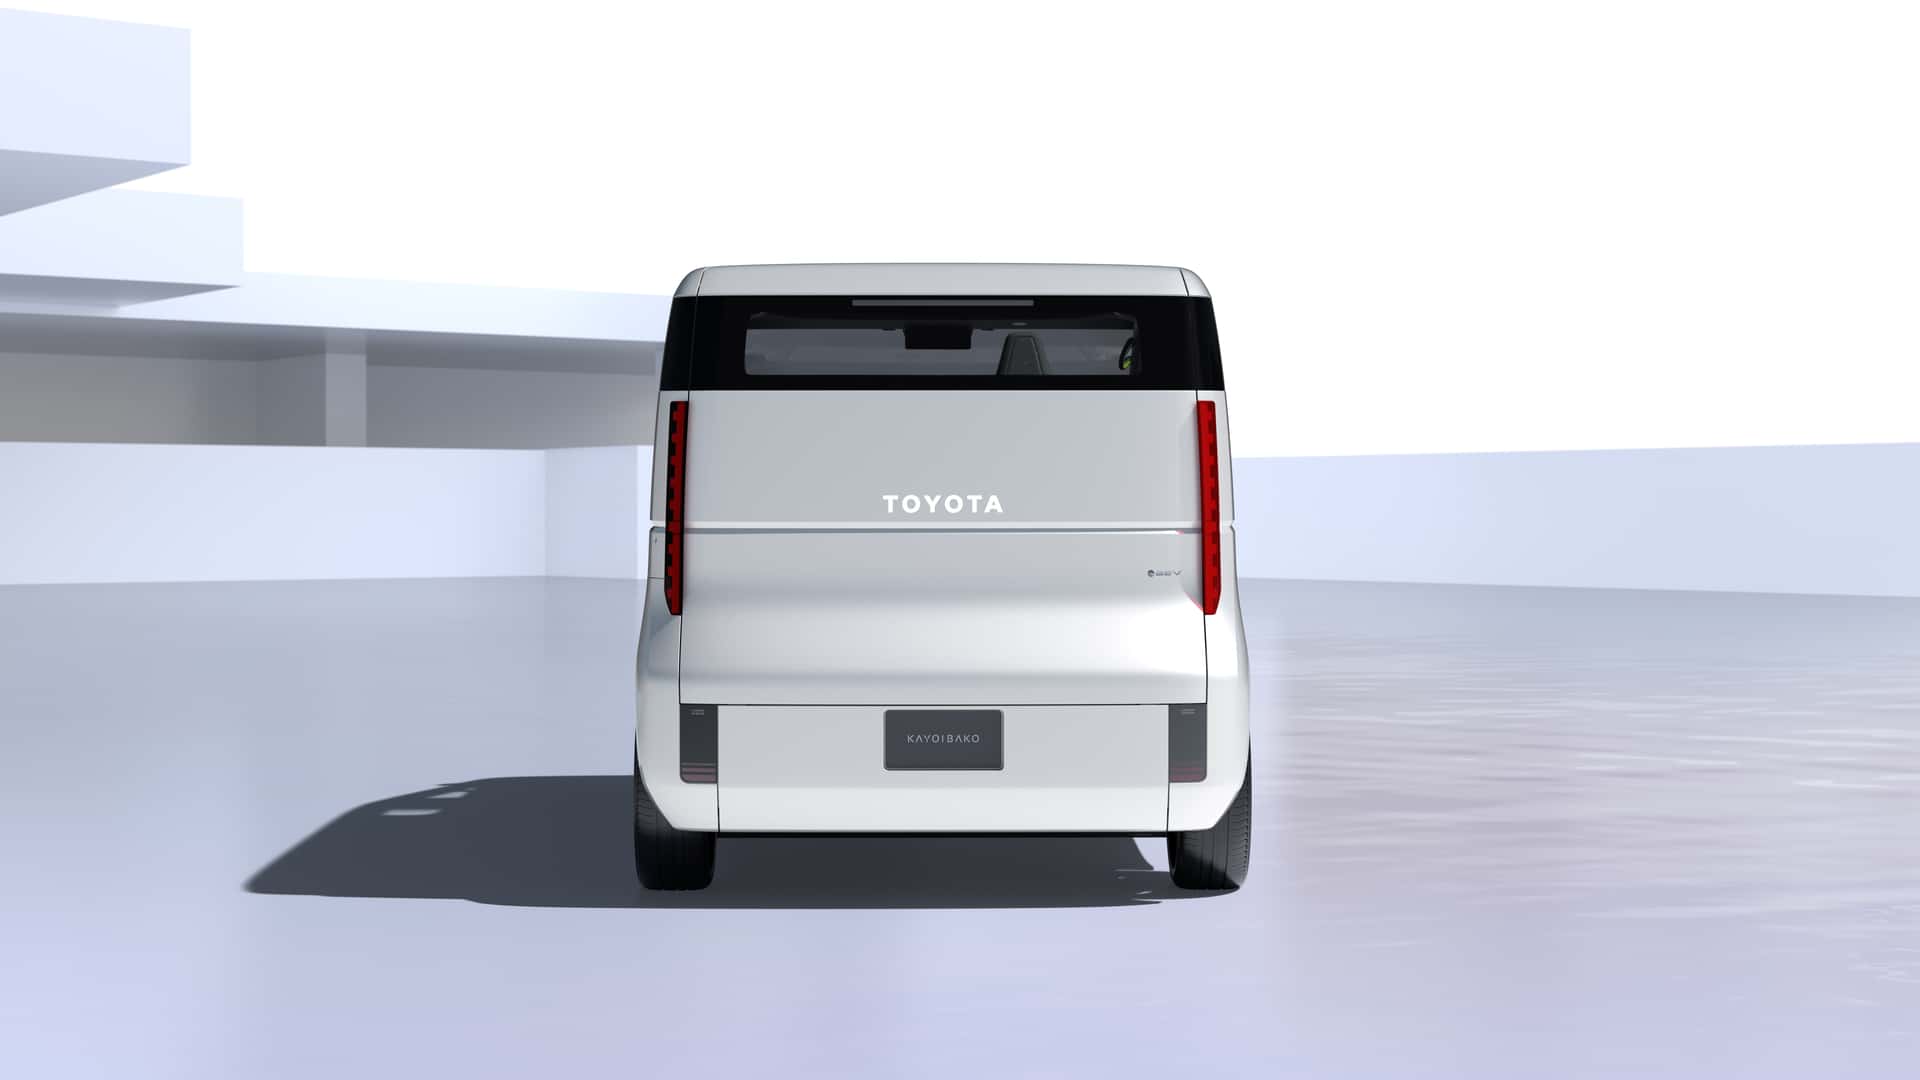 toyota kayoibako ev minivan doubles as cargo hauler or mobile shop